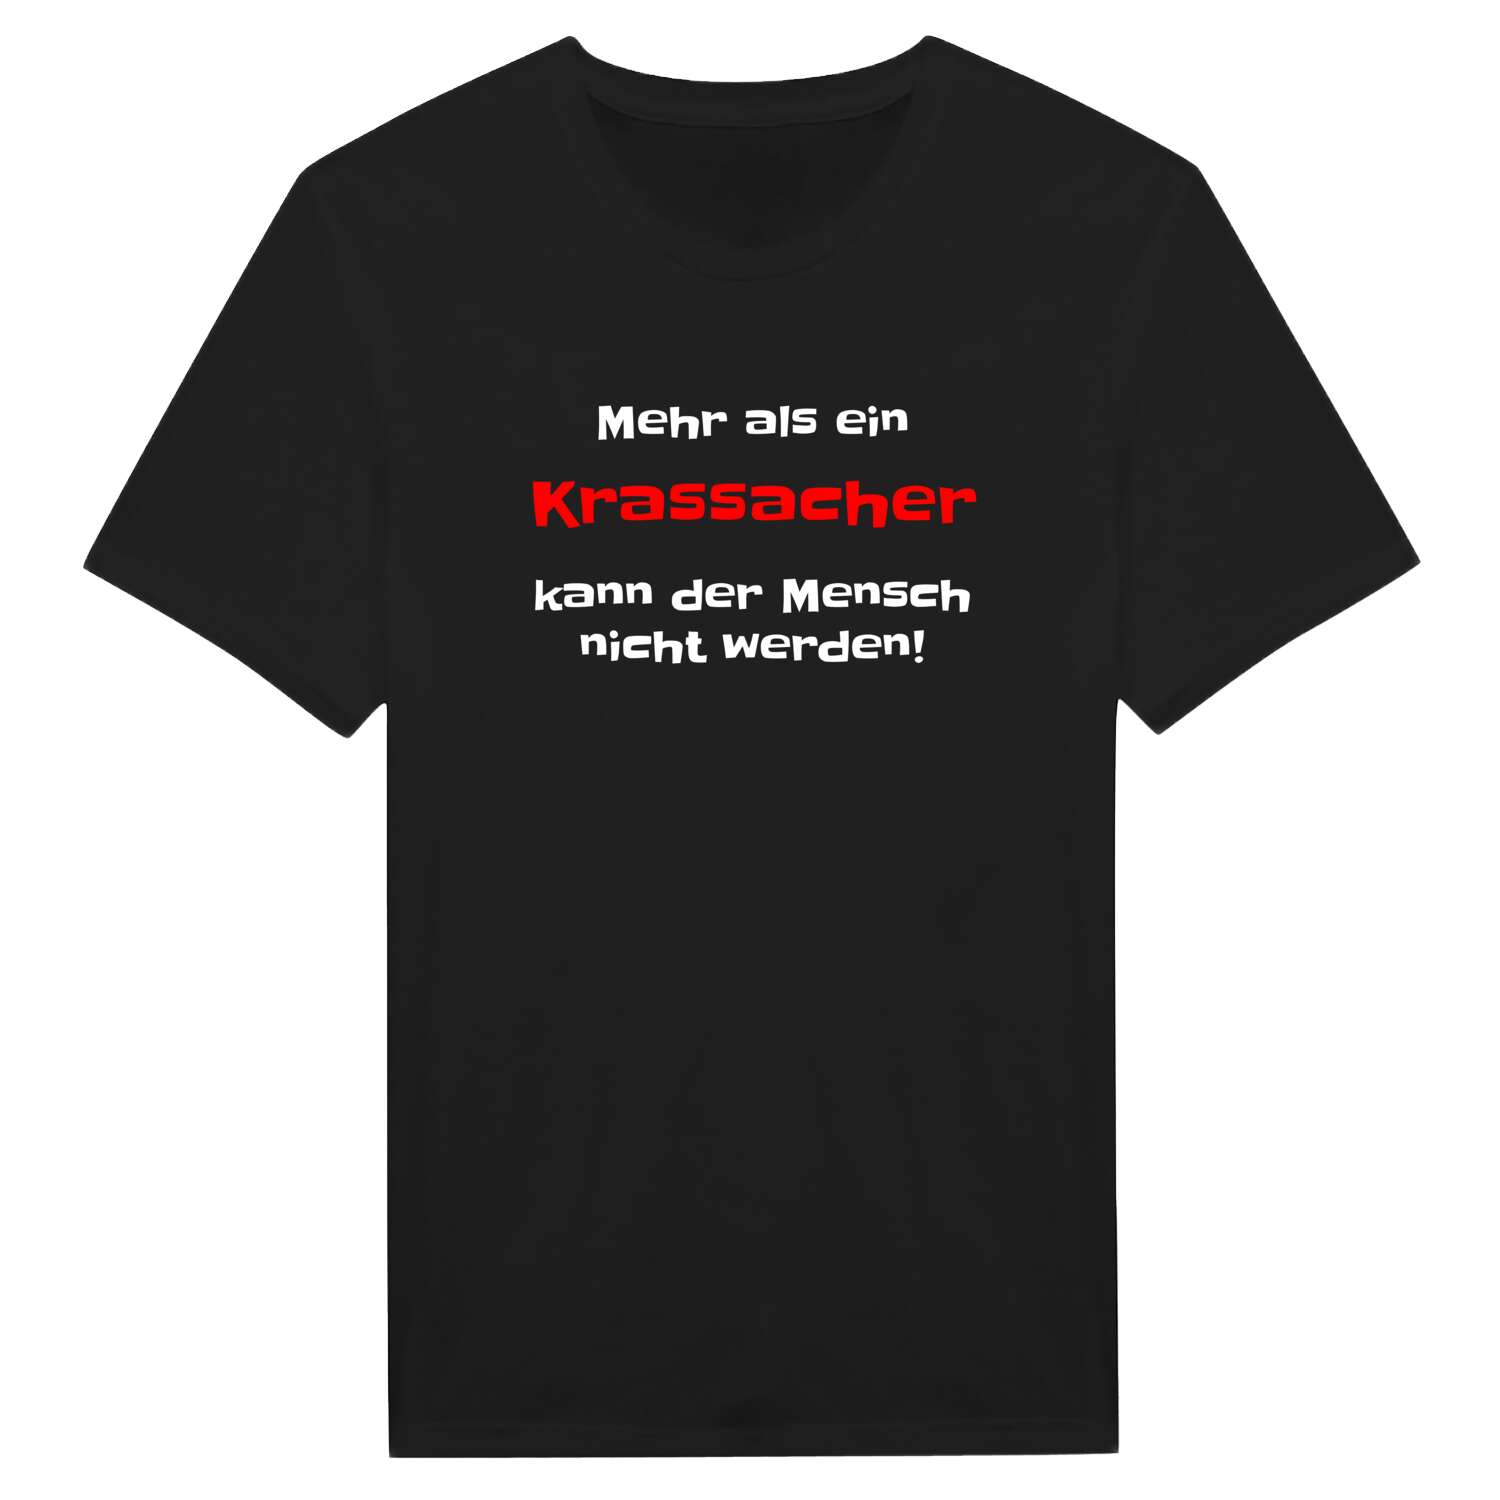 Krassach T-Shirt »Mehr als ein«